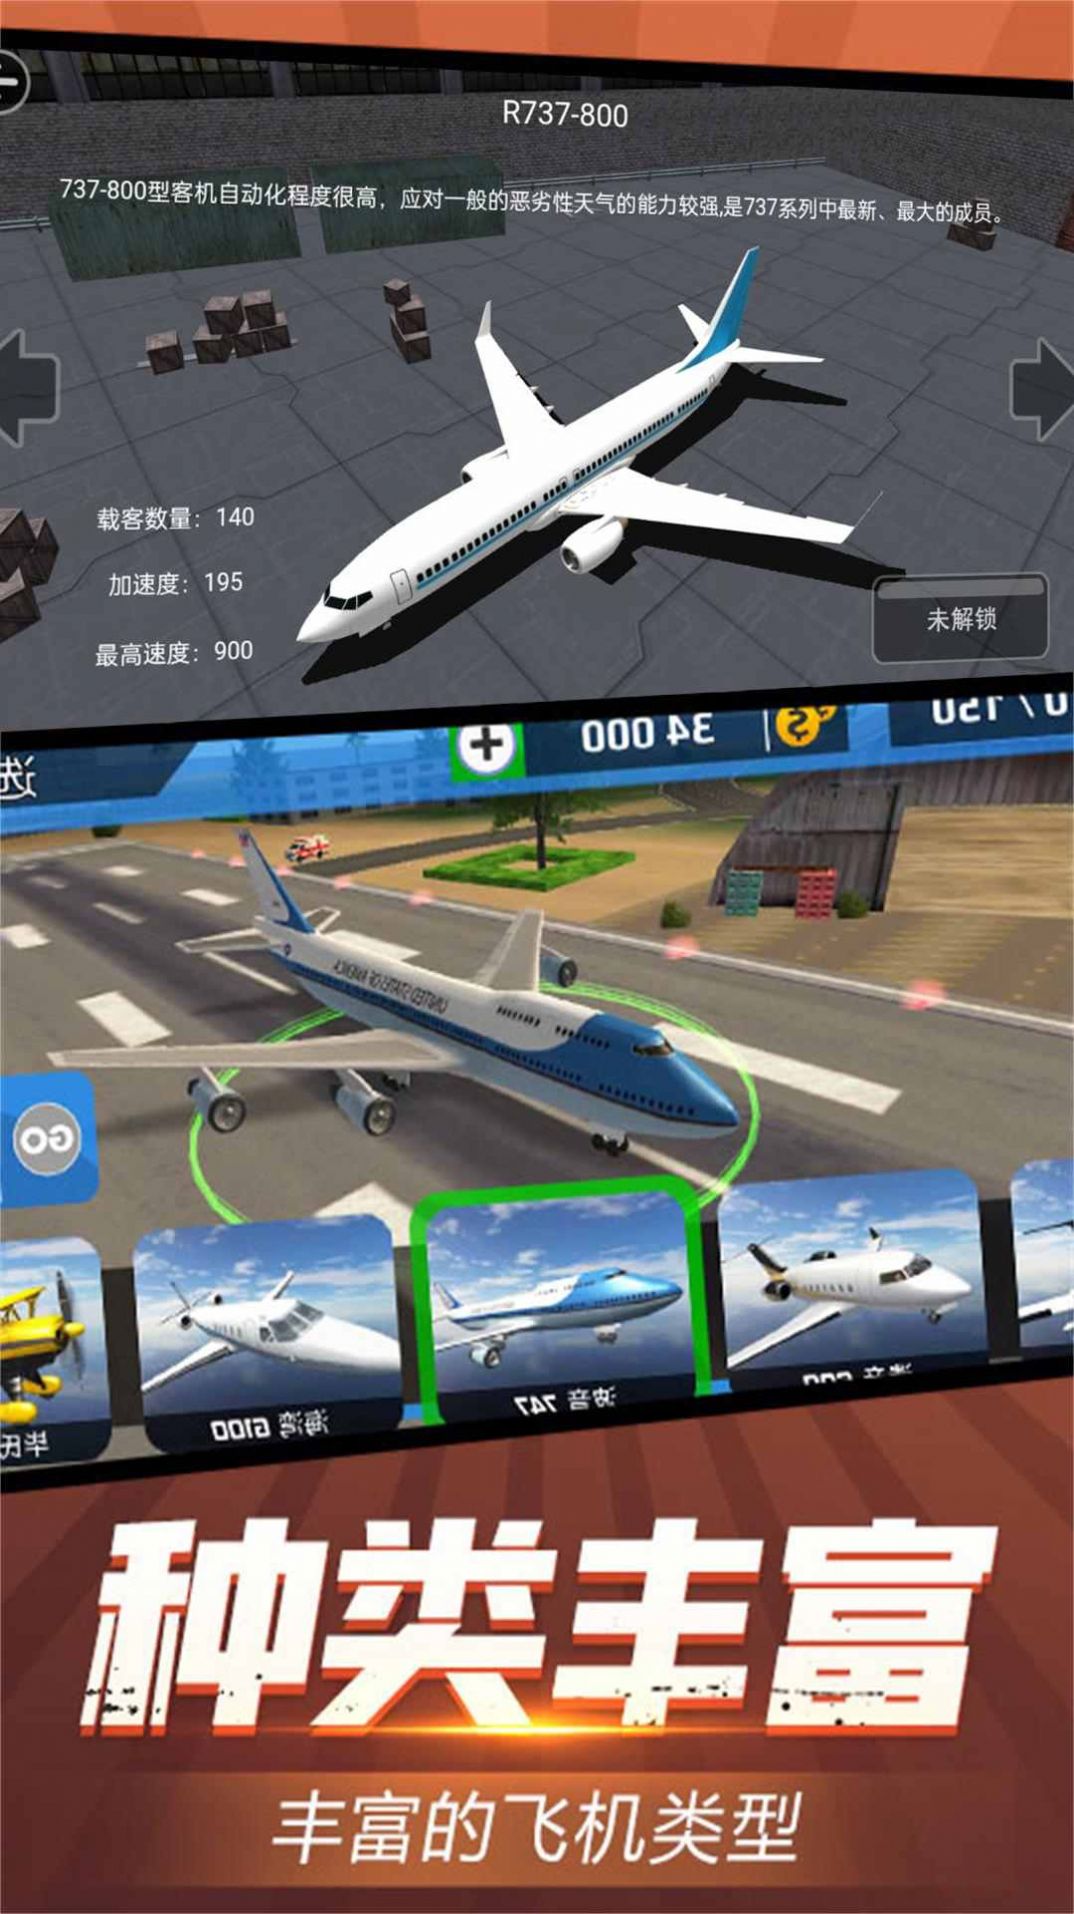 虚拟飞行模拟游戏官方手机版截图3: